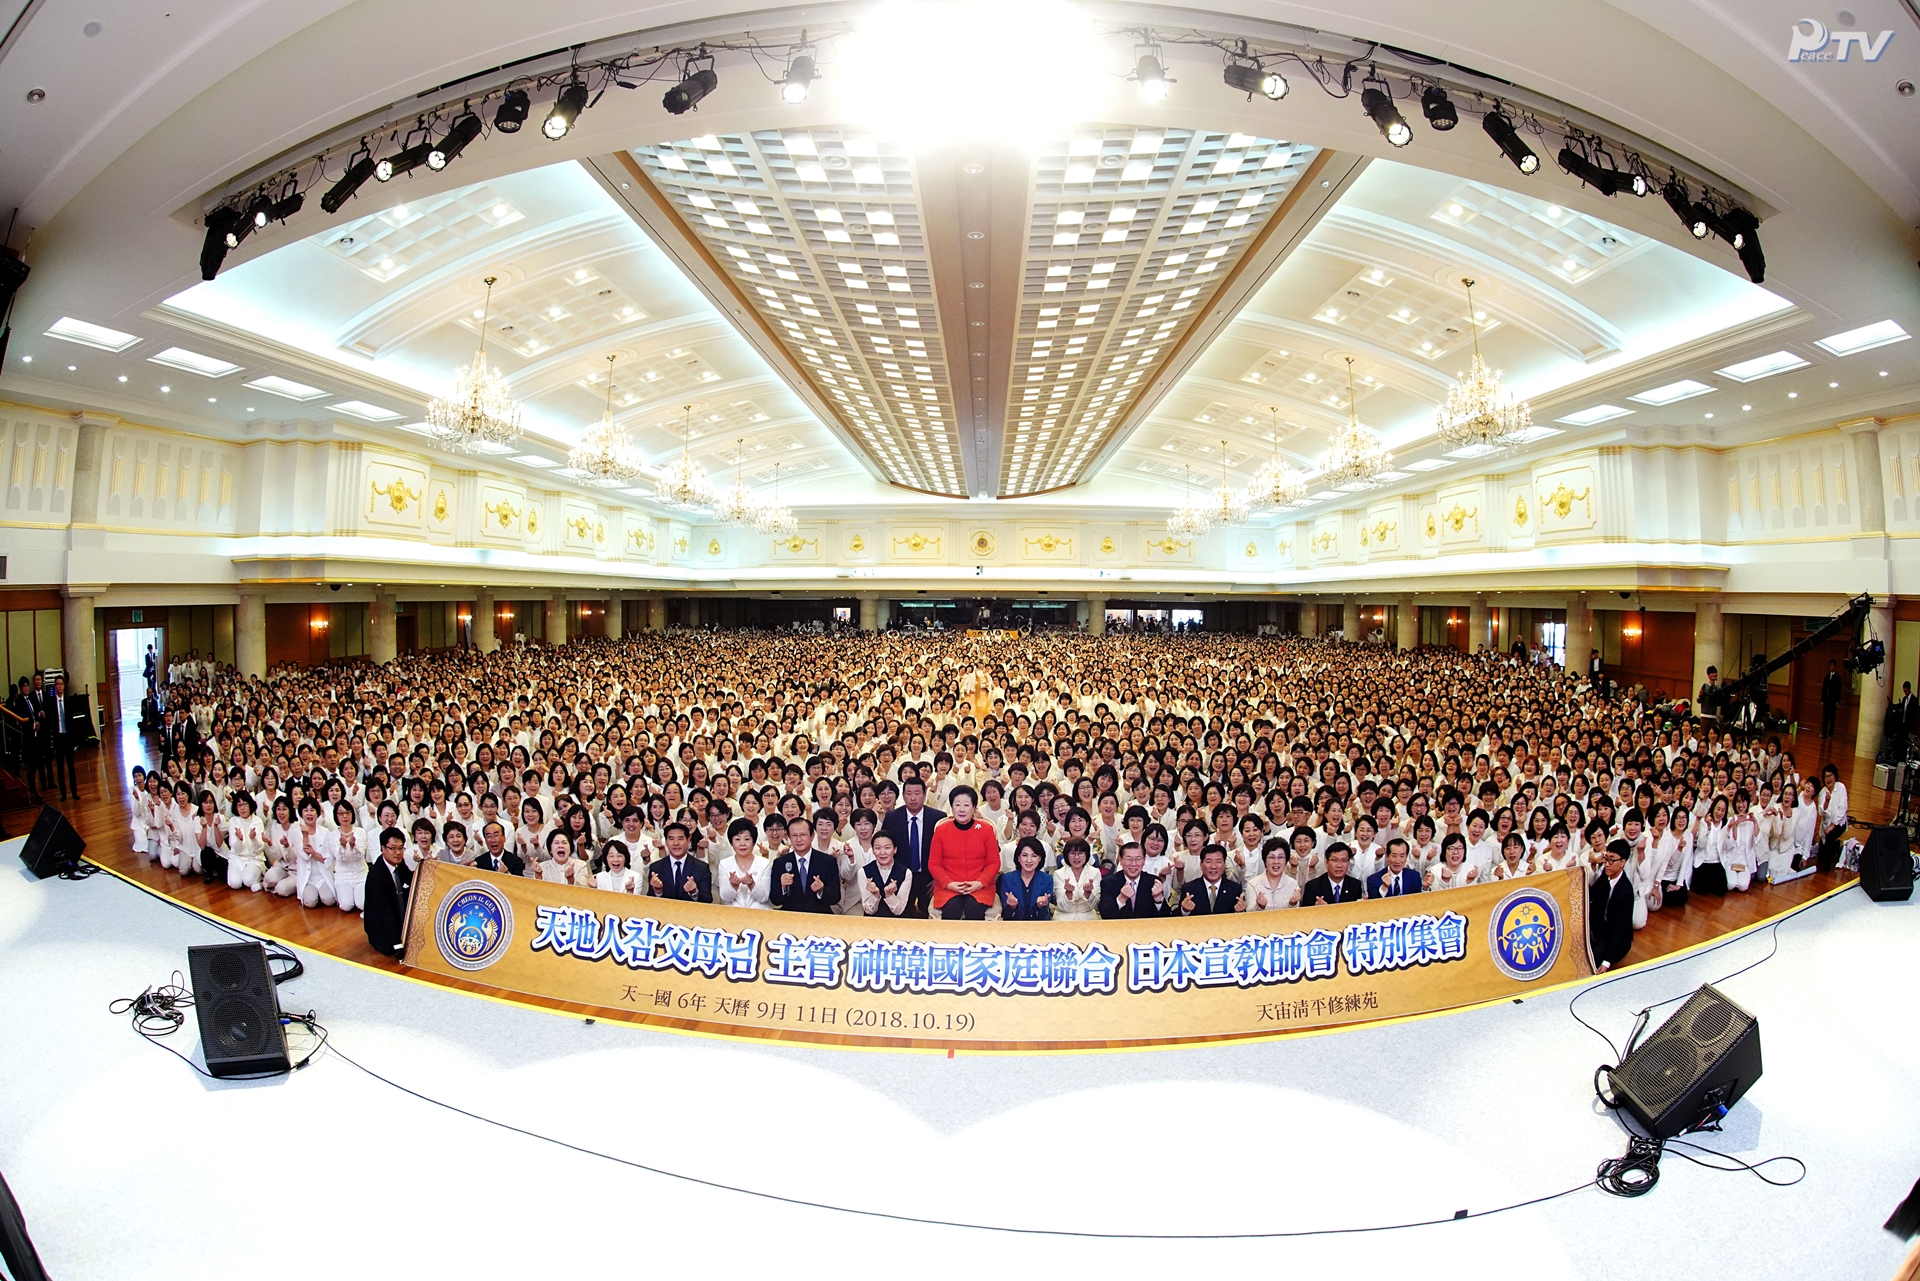 天地人真の父母様主管 神韓国家庭連合 日本宣教師会 特別集会 (2018.10.19)